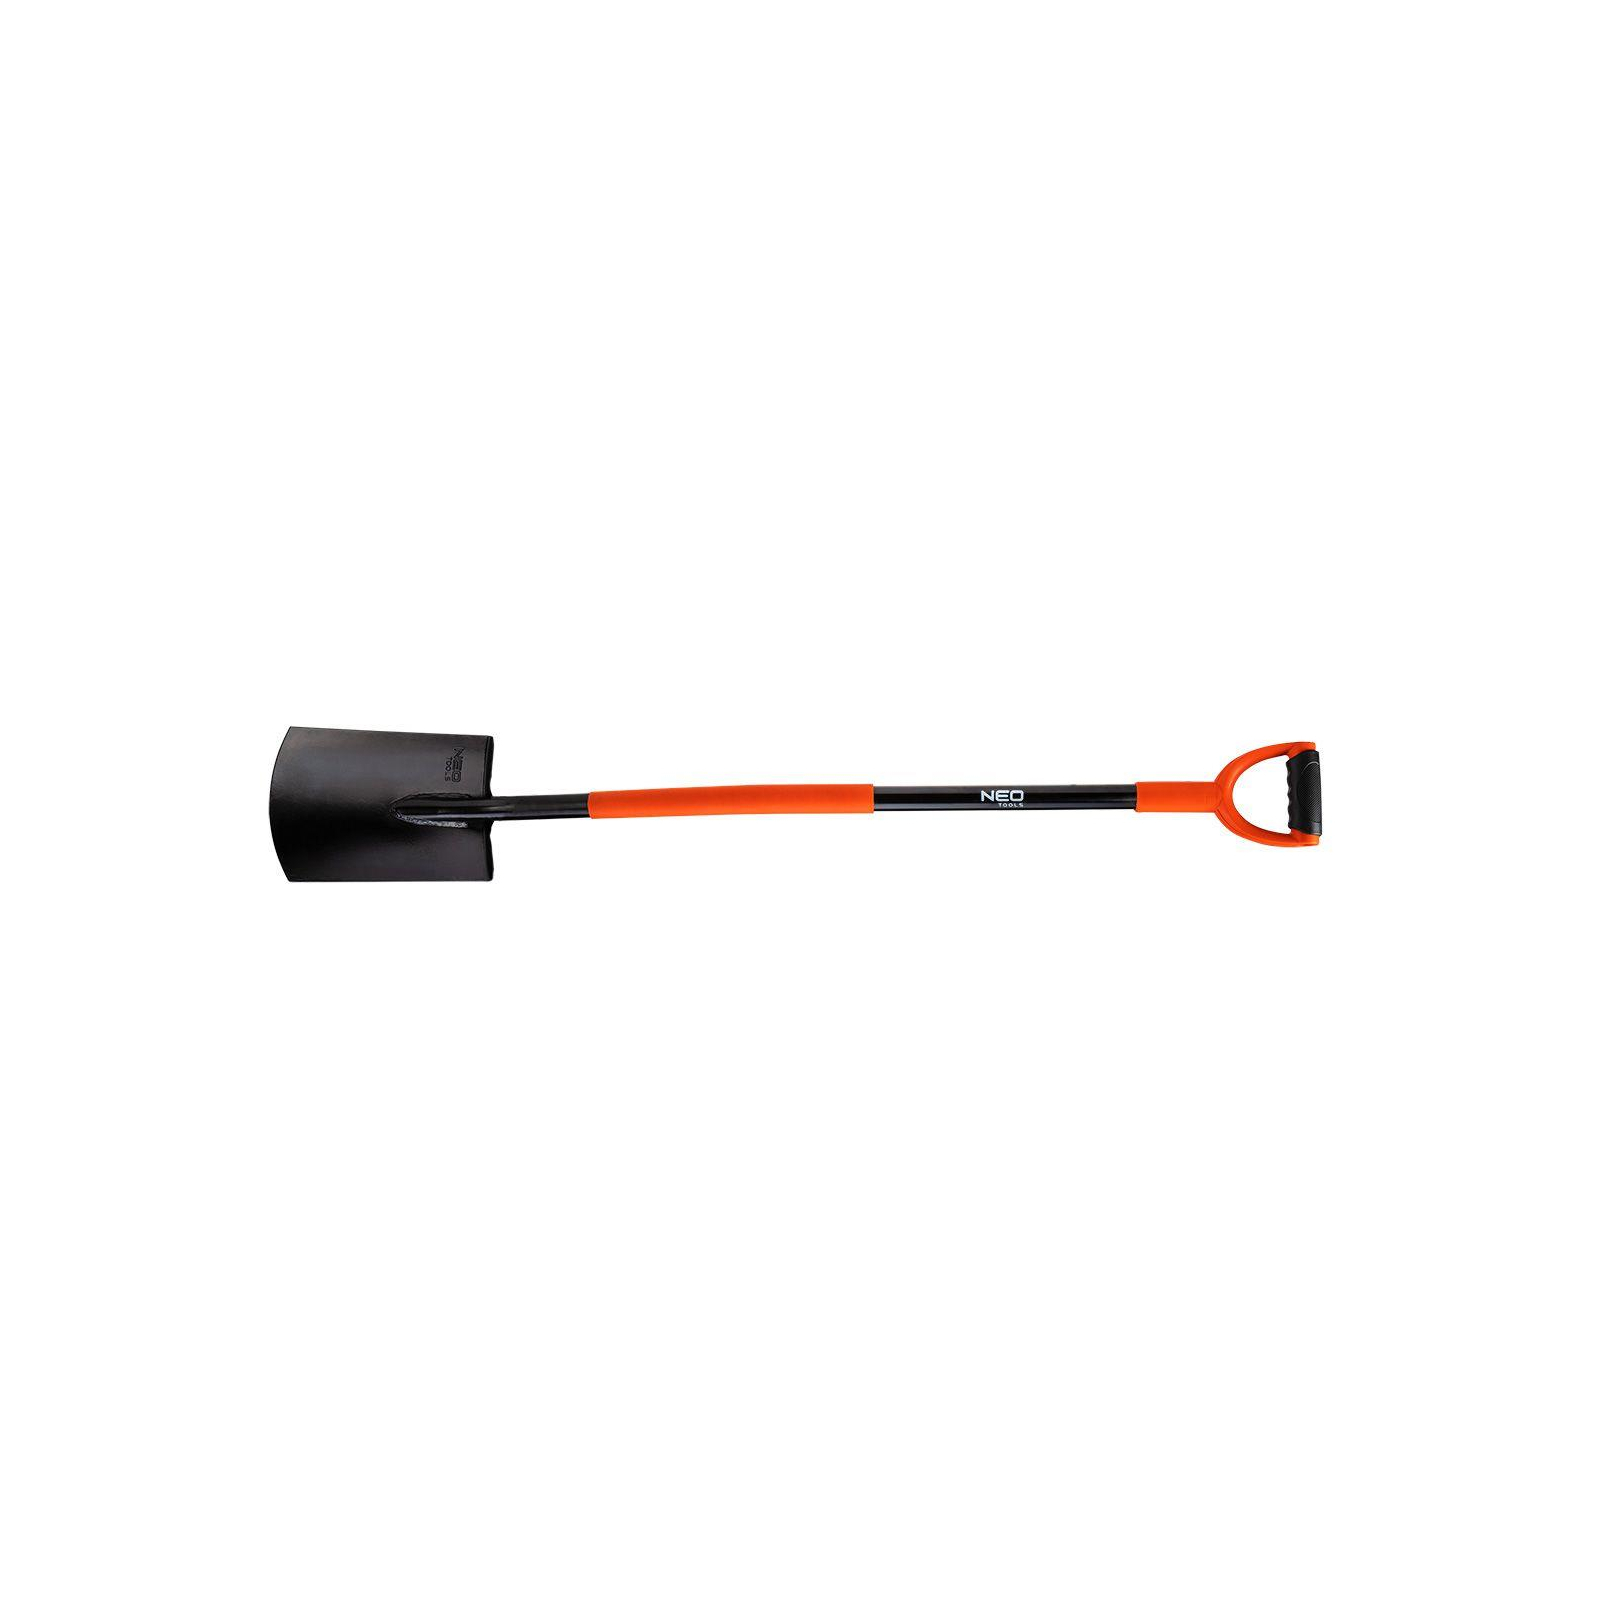 Лопата Neo Tools штикова пряма, руків'я металеве D-подібне, 125см, 2.12кг (95-007)